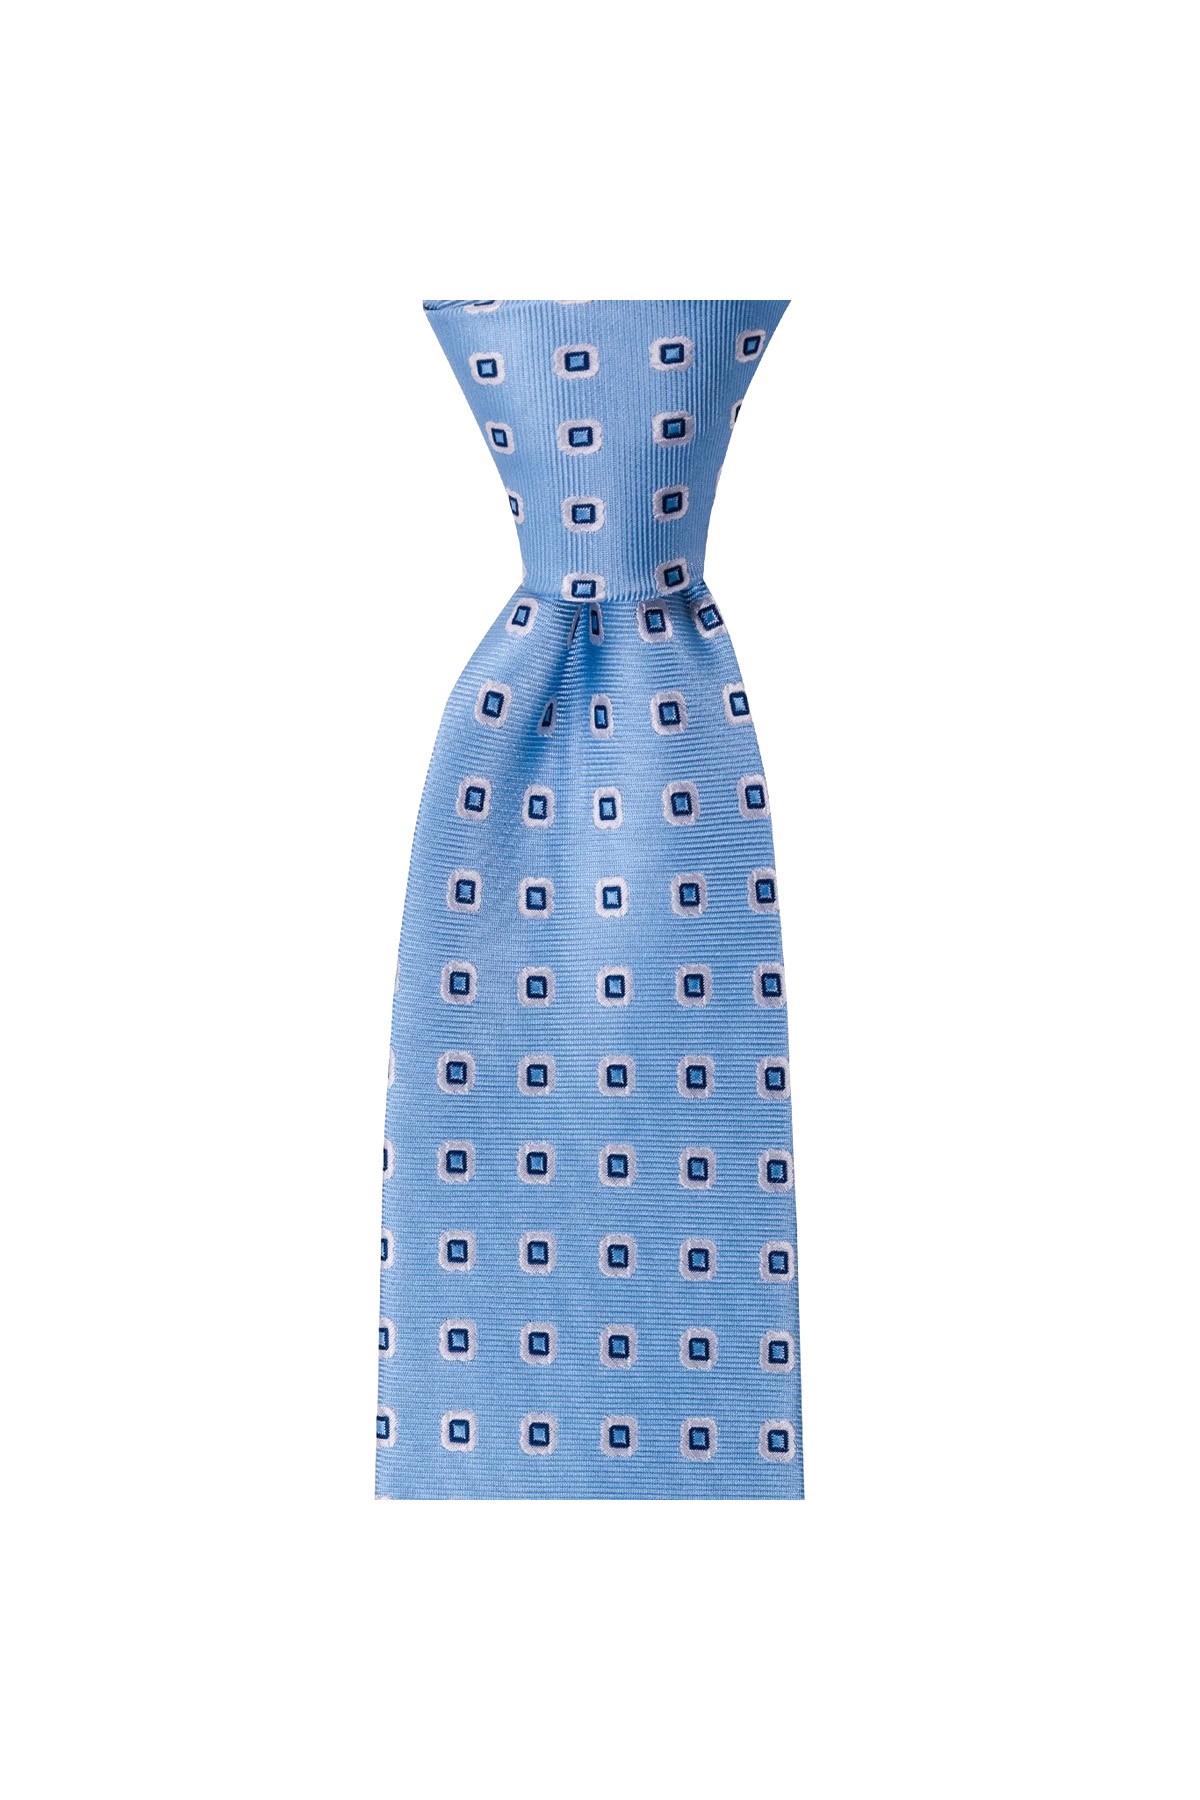 Klasik desenli 8 cm genişliğinde mendilli kravat